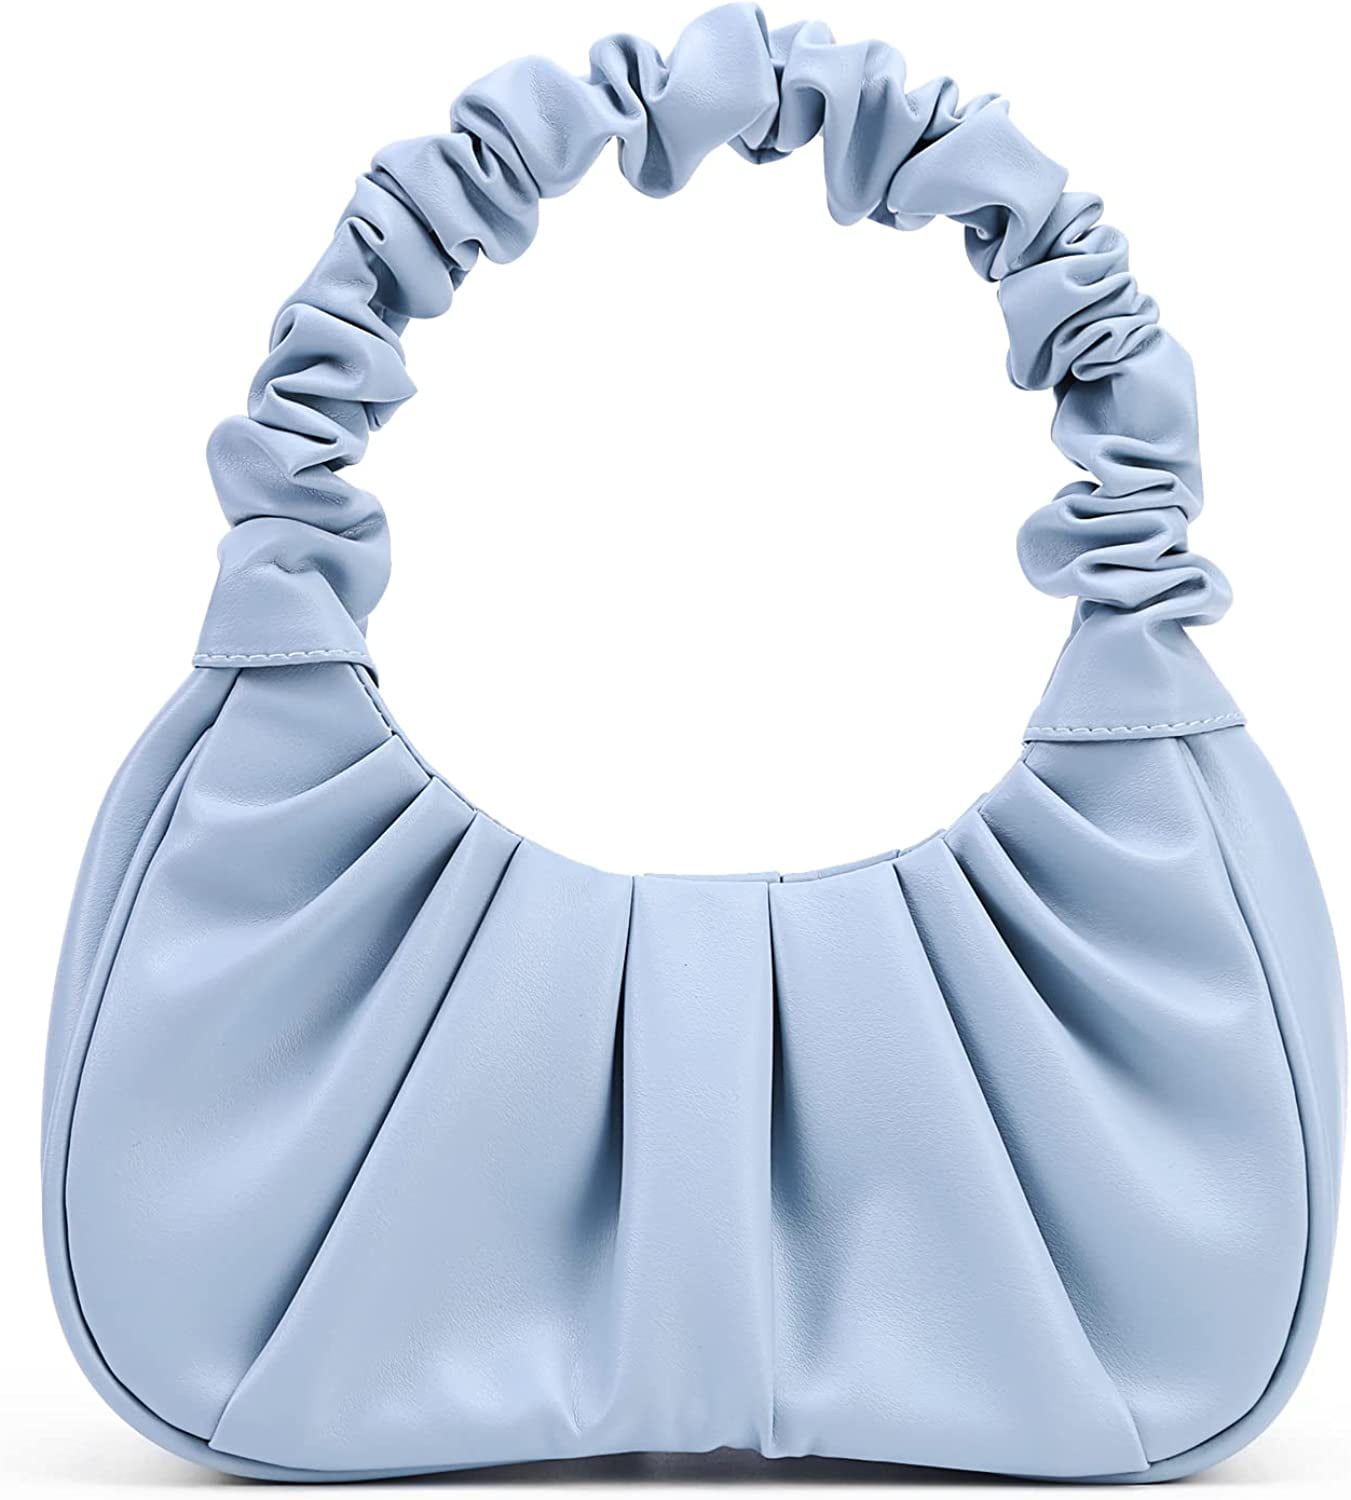 Y2K Purse Bags Chic Pouch Bag Vegan Leather Vintage Hobo Handbag Mini Shoulder Bag Underarm Bag Purse for Women